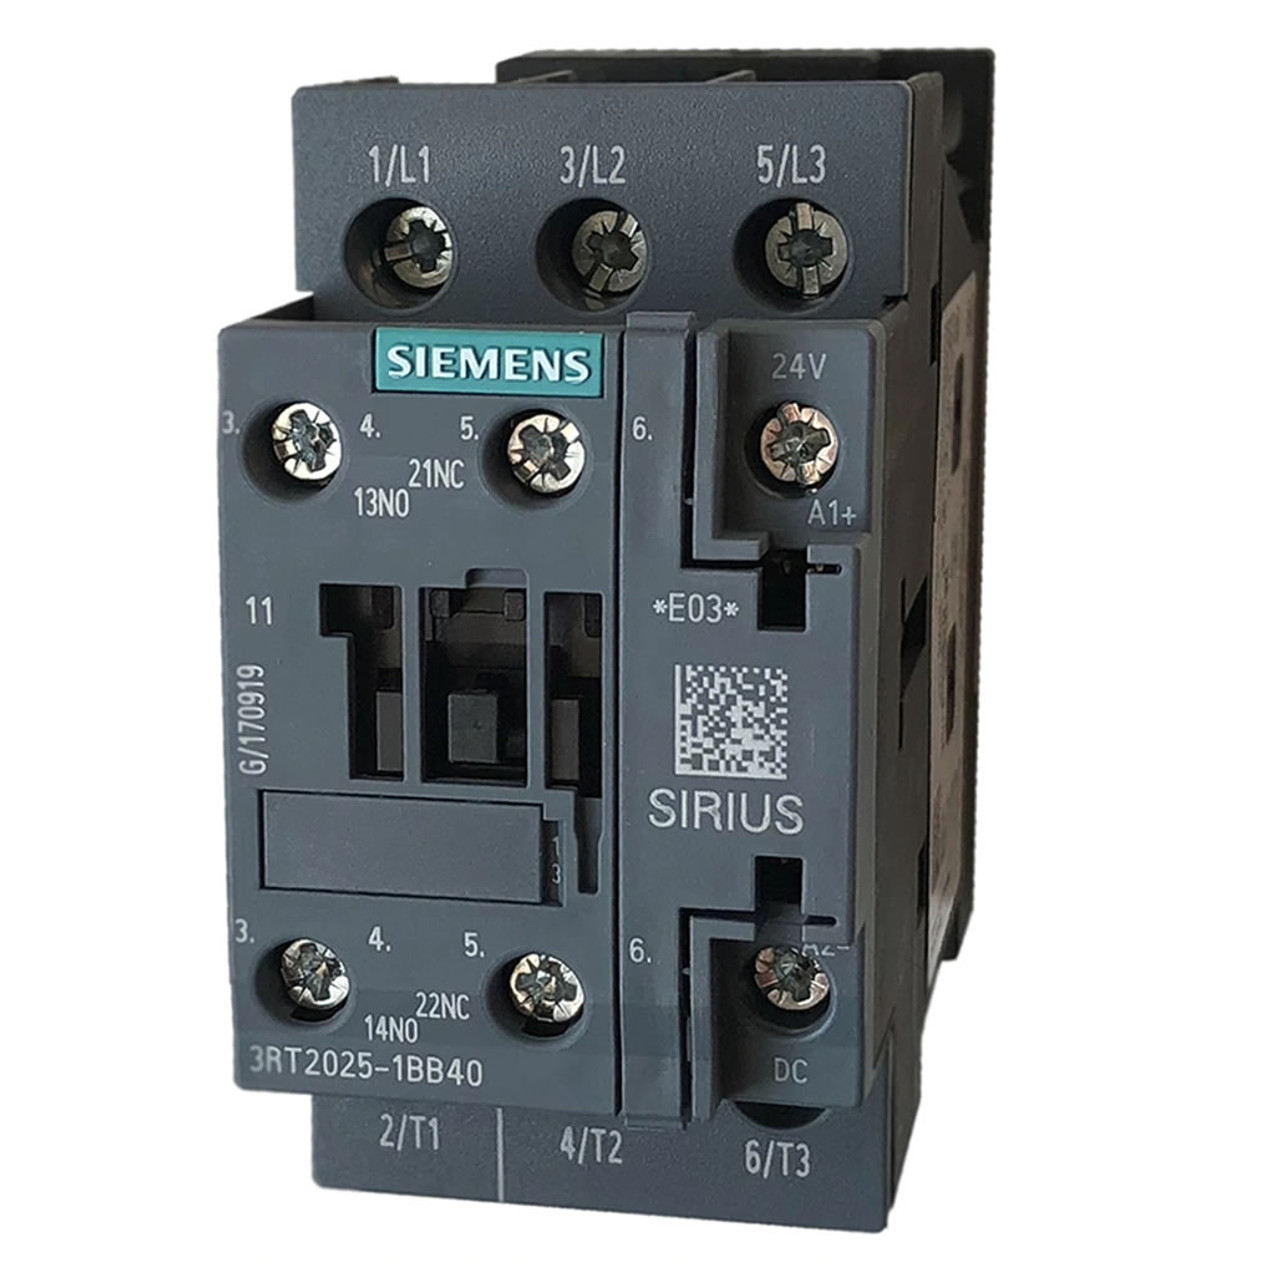 Siemens 3RT2025-1BE40 contactor